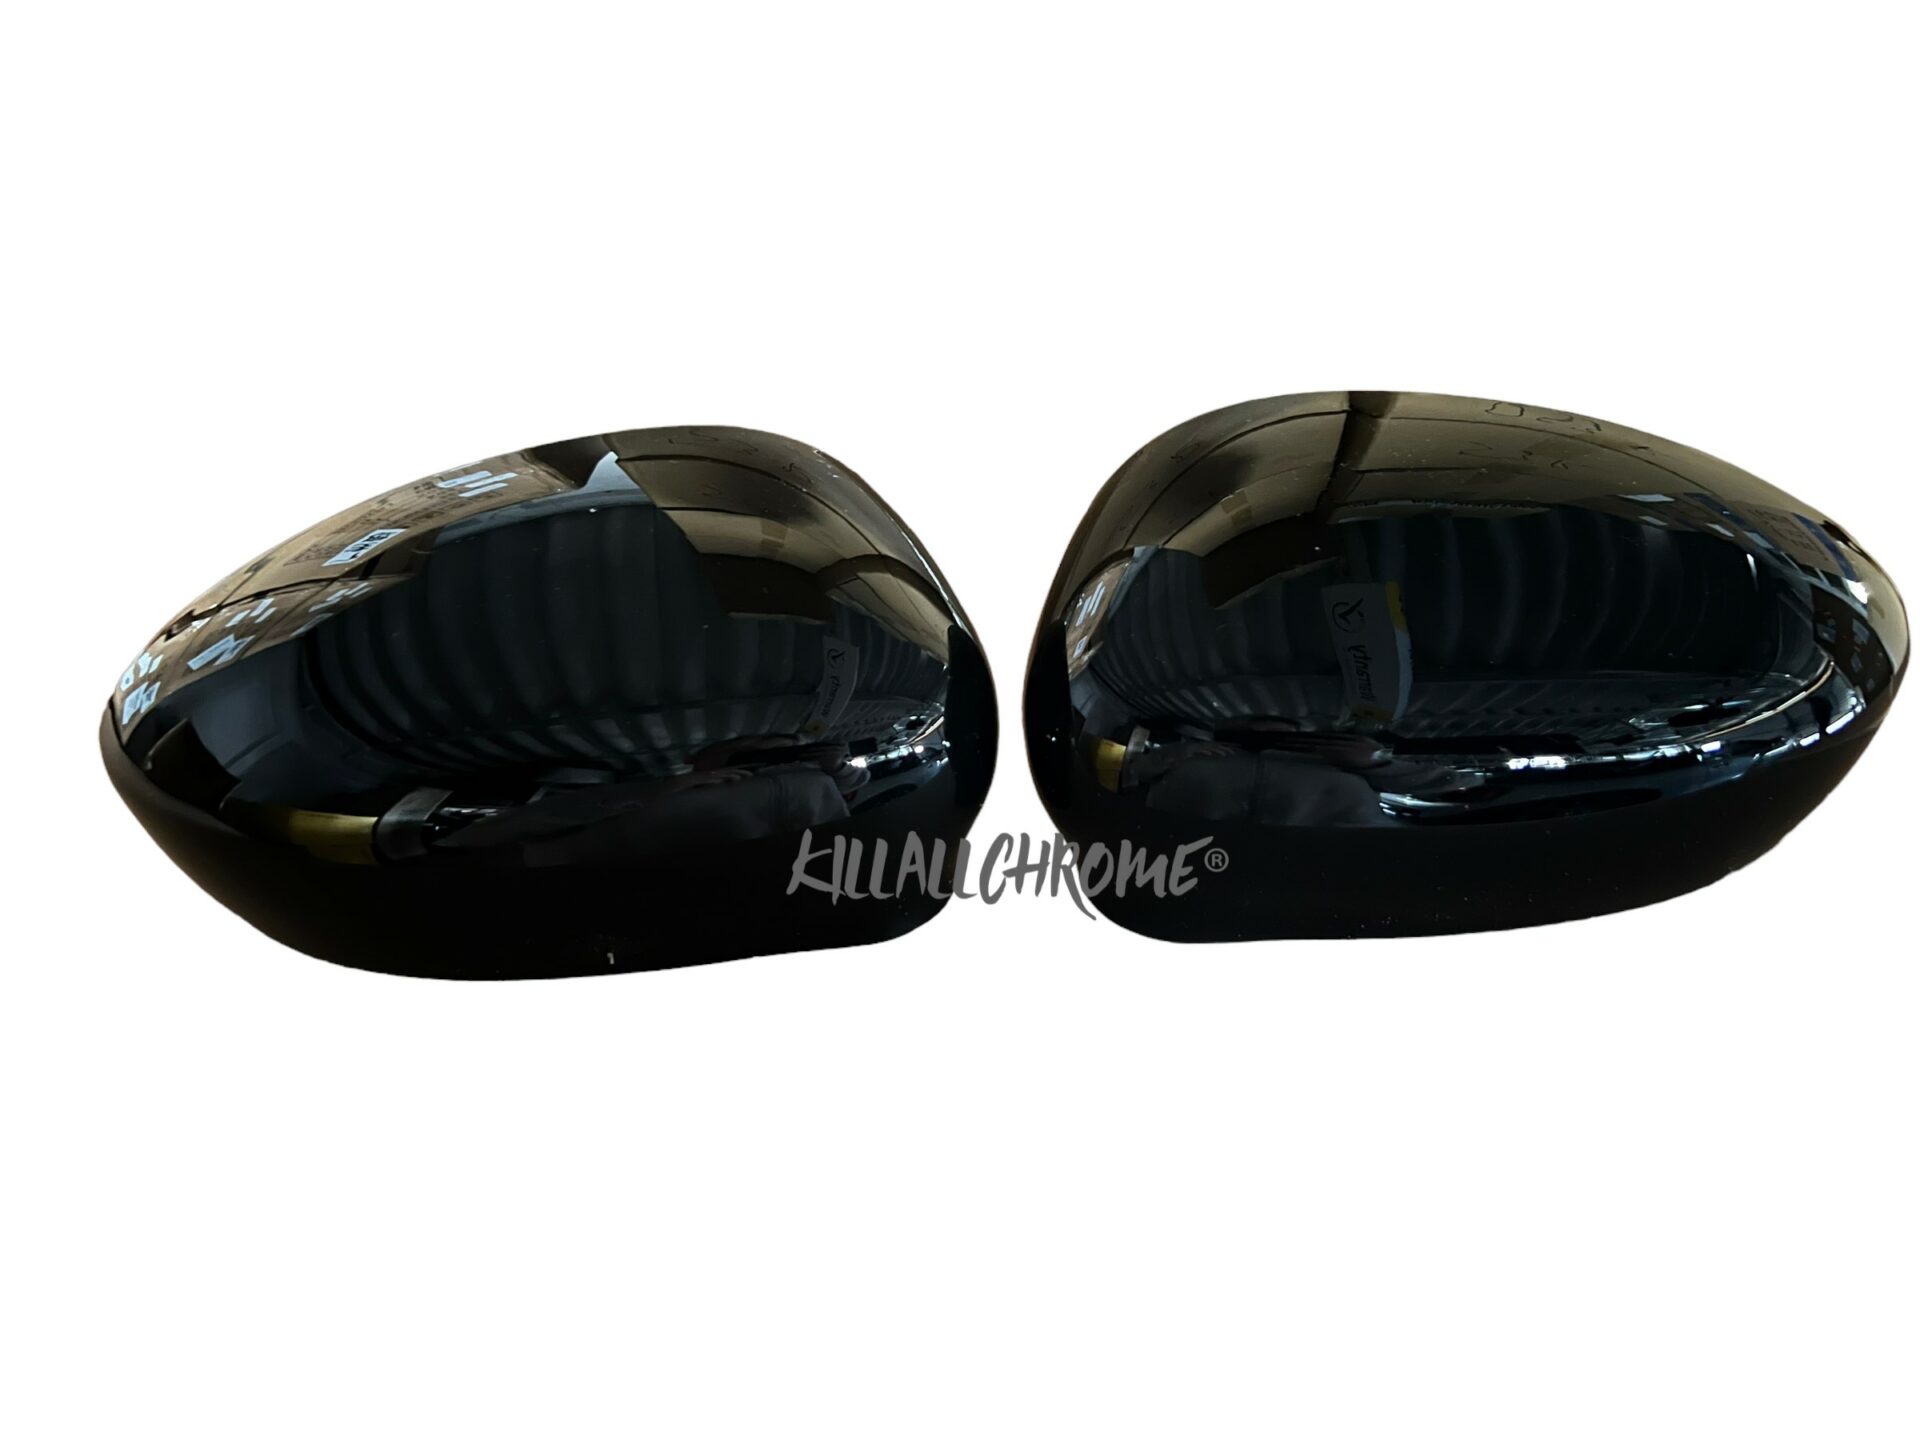 Fiat 500 + Abarth Replacement Mirror Caps – KillAllChrome®